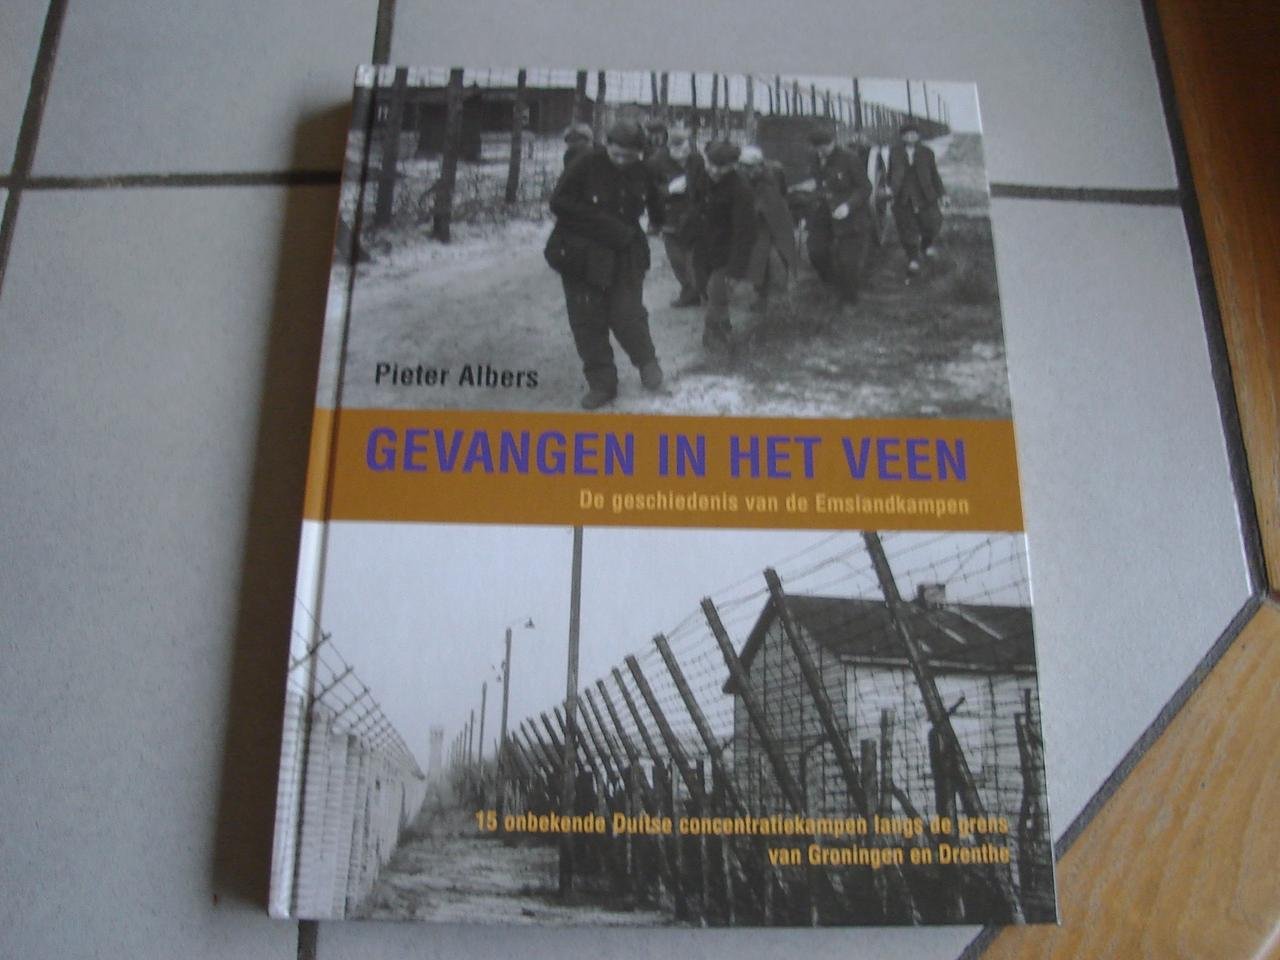 Pieter Albers - Gevangen in het veen de geschiedenis van de Emslandkampen. 15 onbekende duitse concentratiekampen langs de grens van groningen en Drenthe.